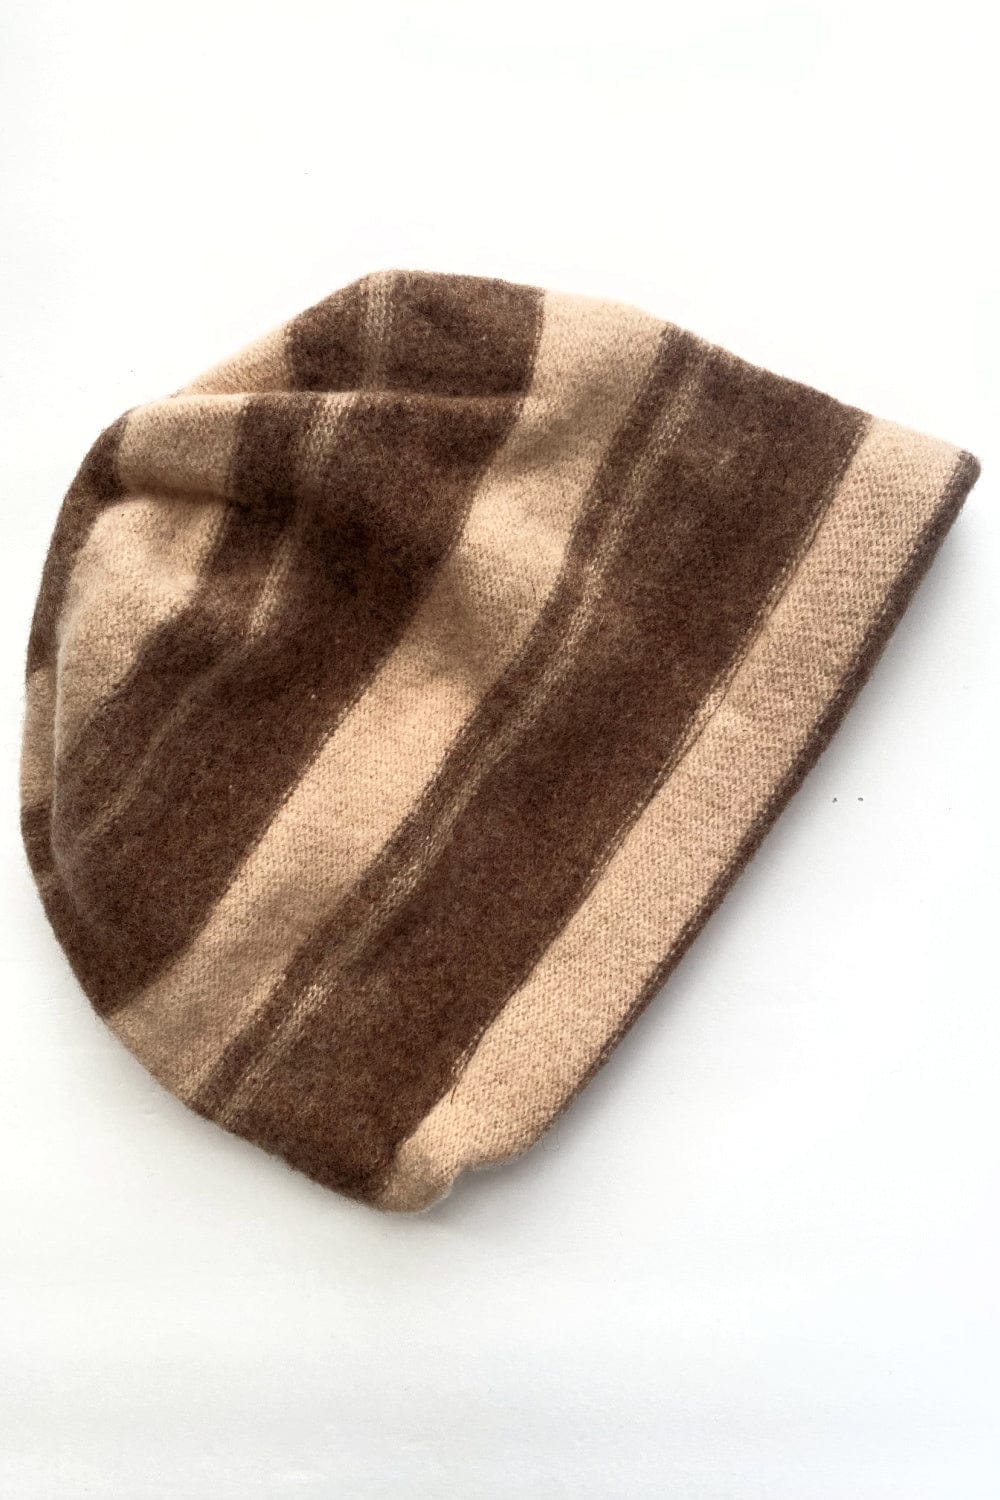 Browns striped wool women's hat.